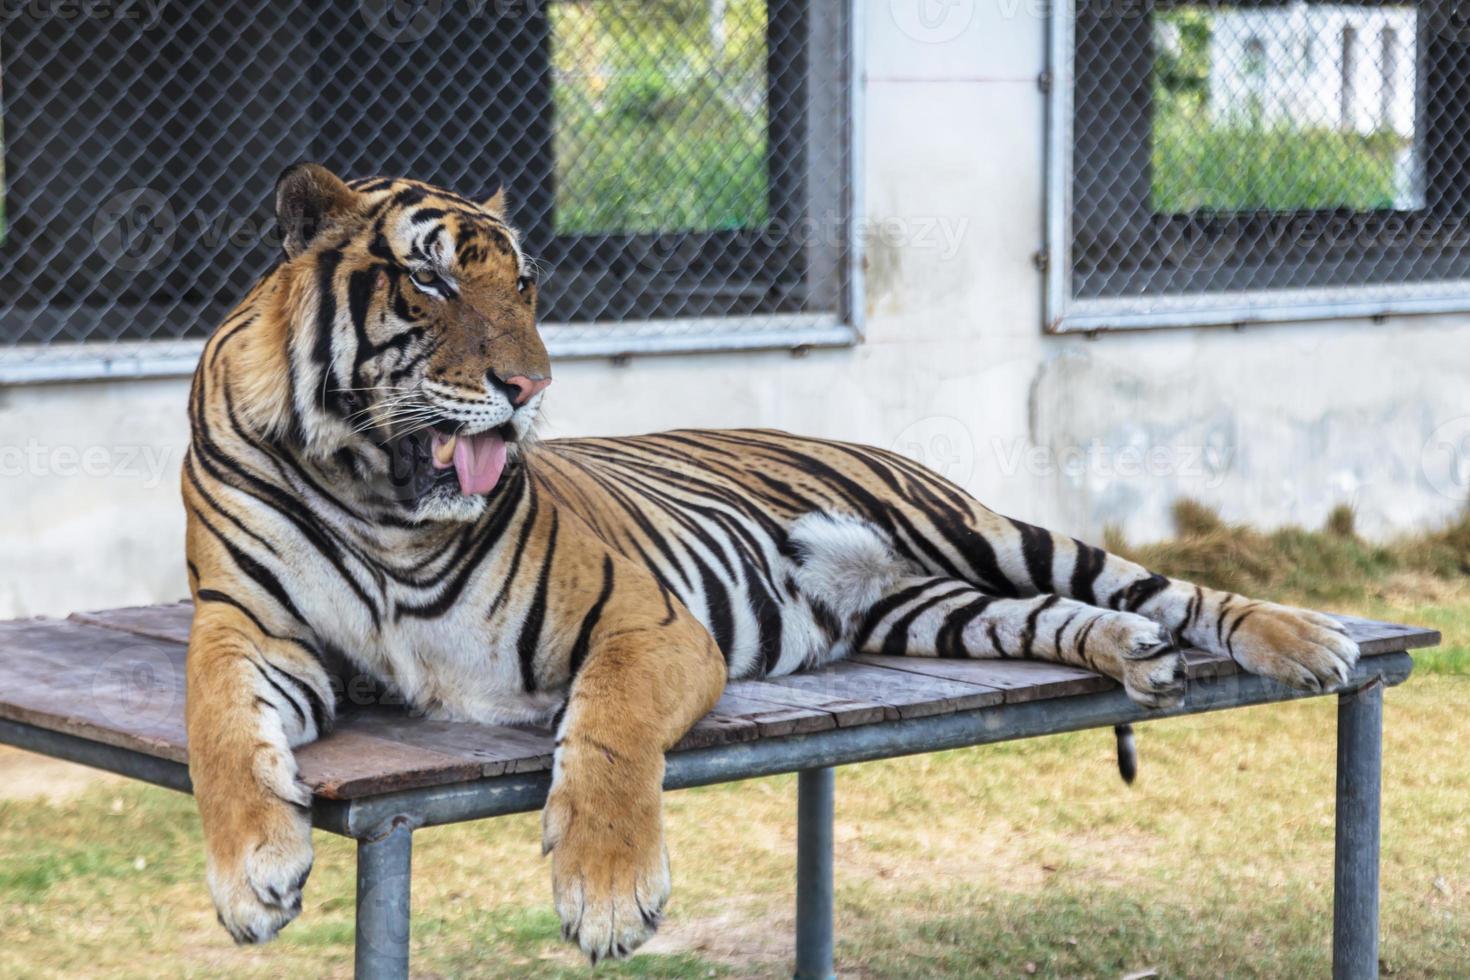 Tiger im Zoo foto